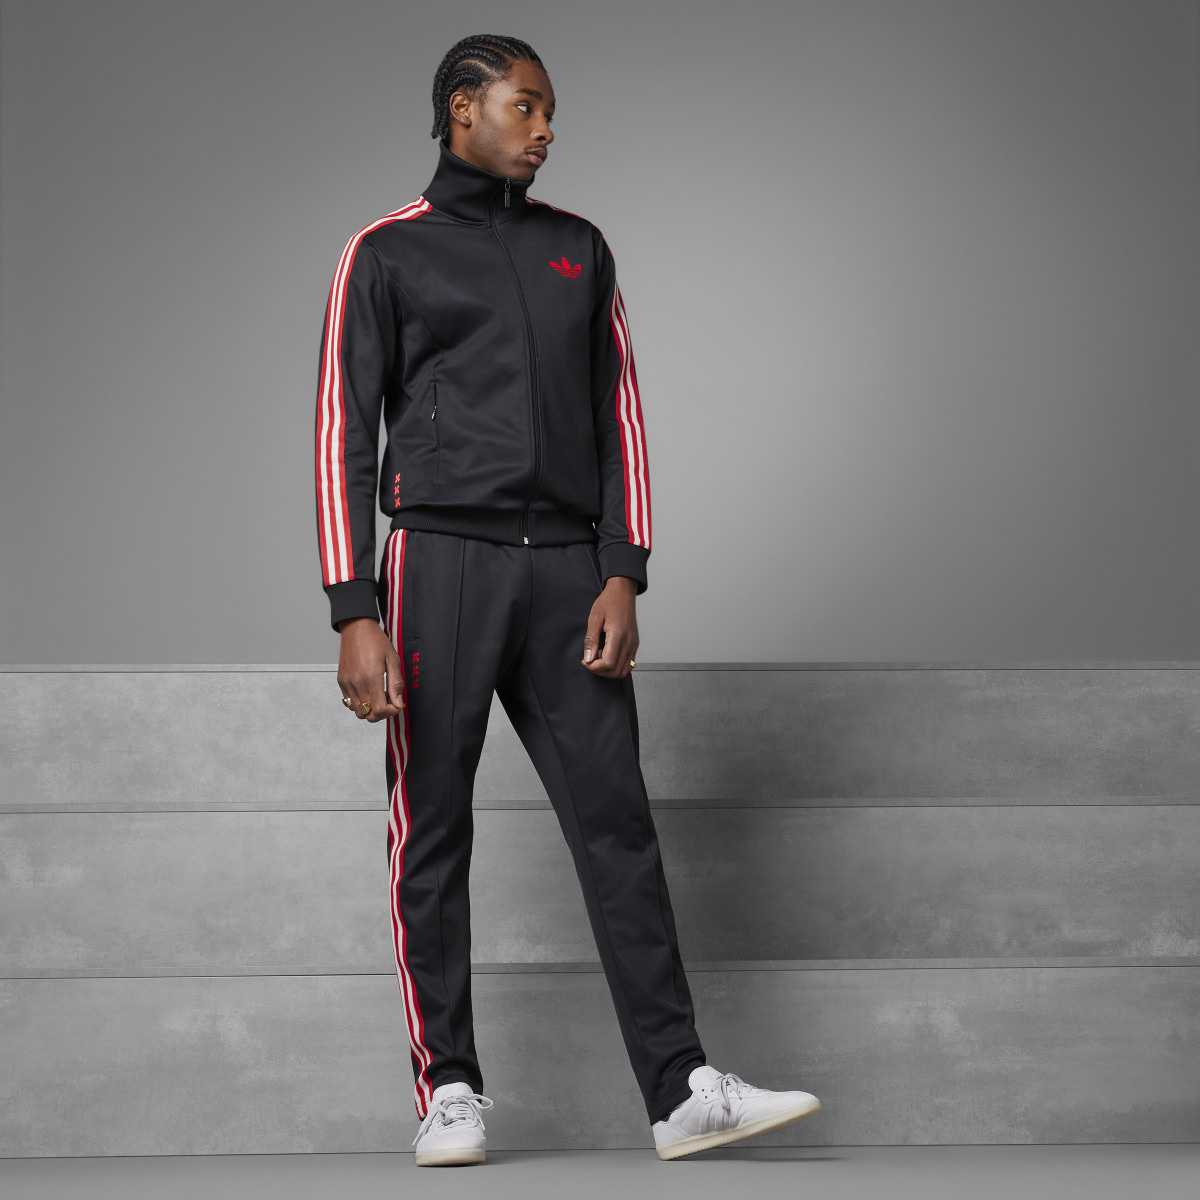 Adidas Track pants OG Ajax Amsterdam. 4